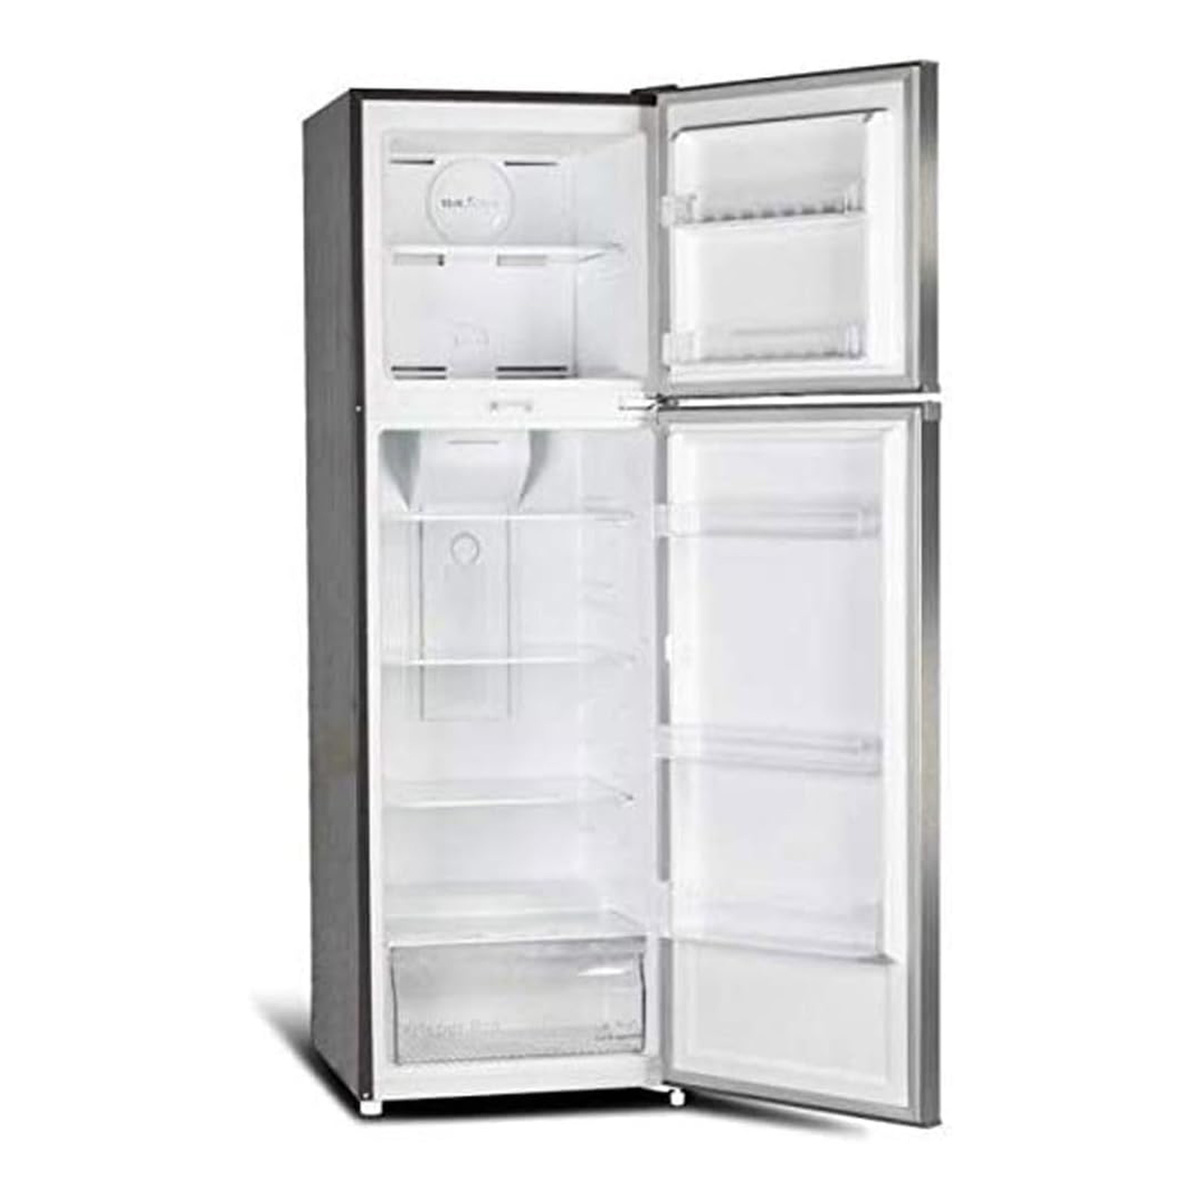 Bompani Double Door Refrigerator, 275 L, Silver, BR300SS